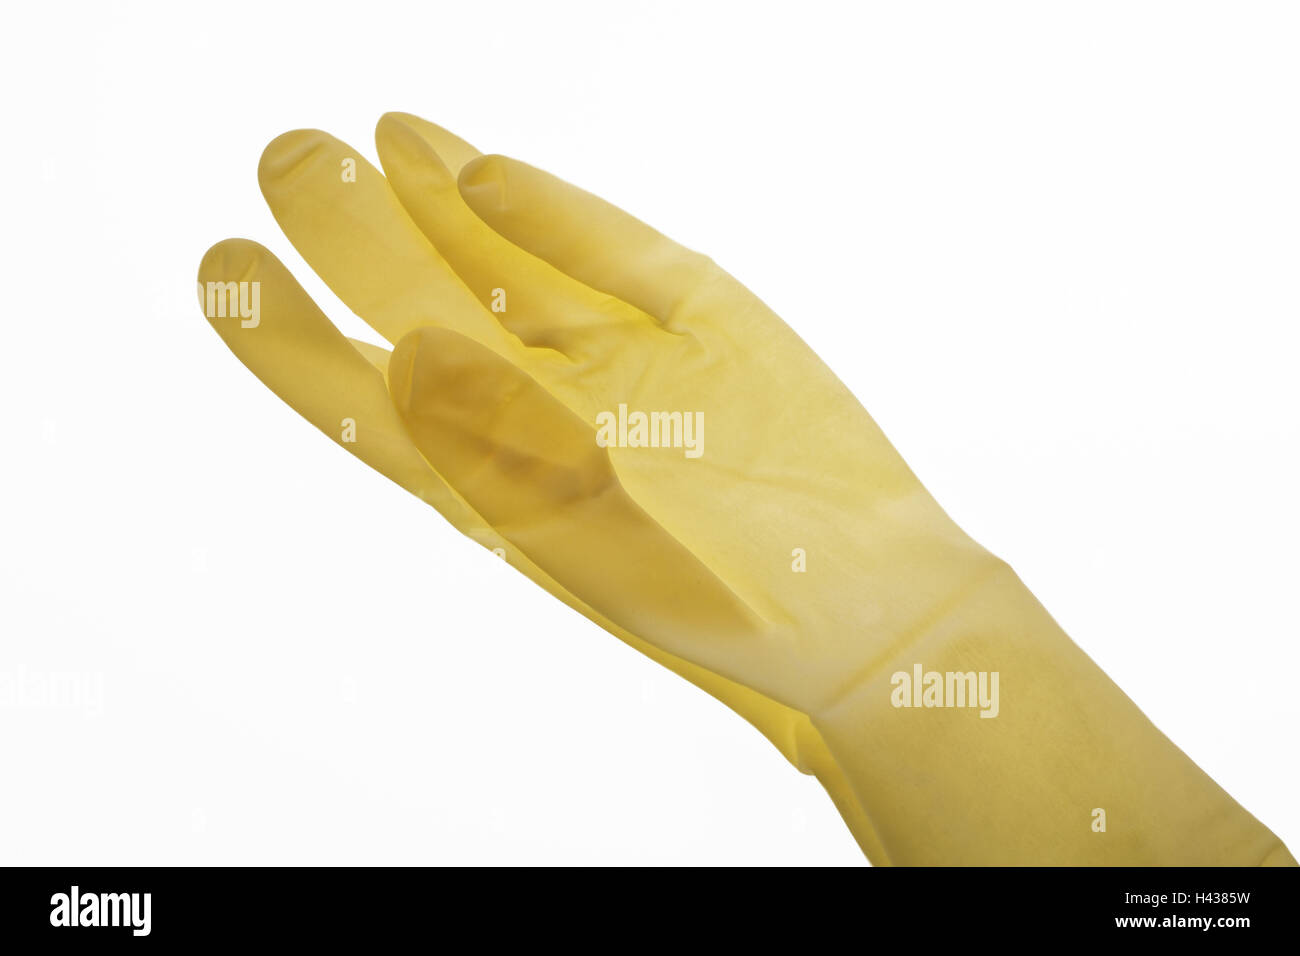 Latex glove, Stock Photo